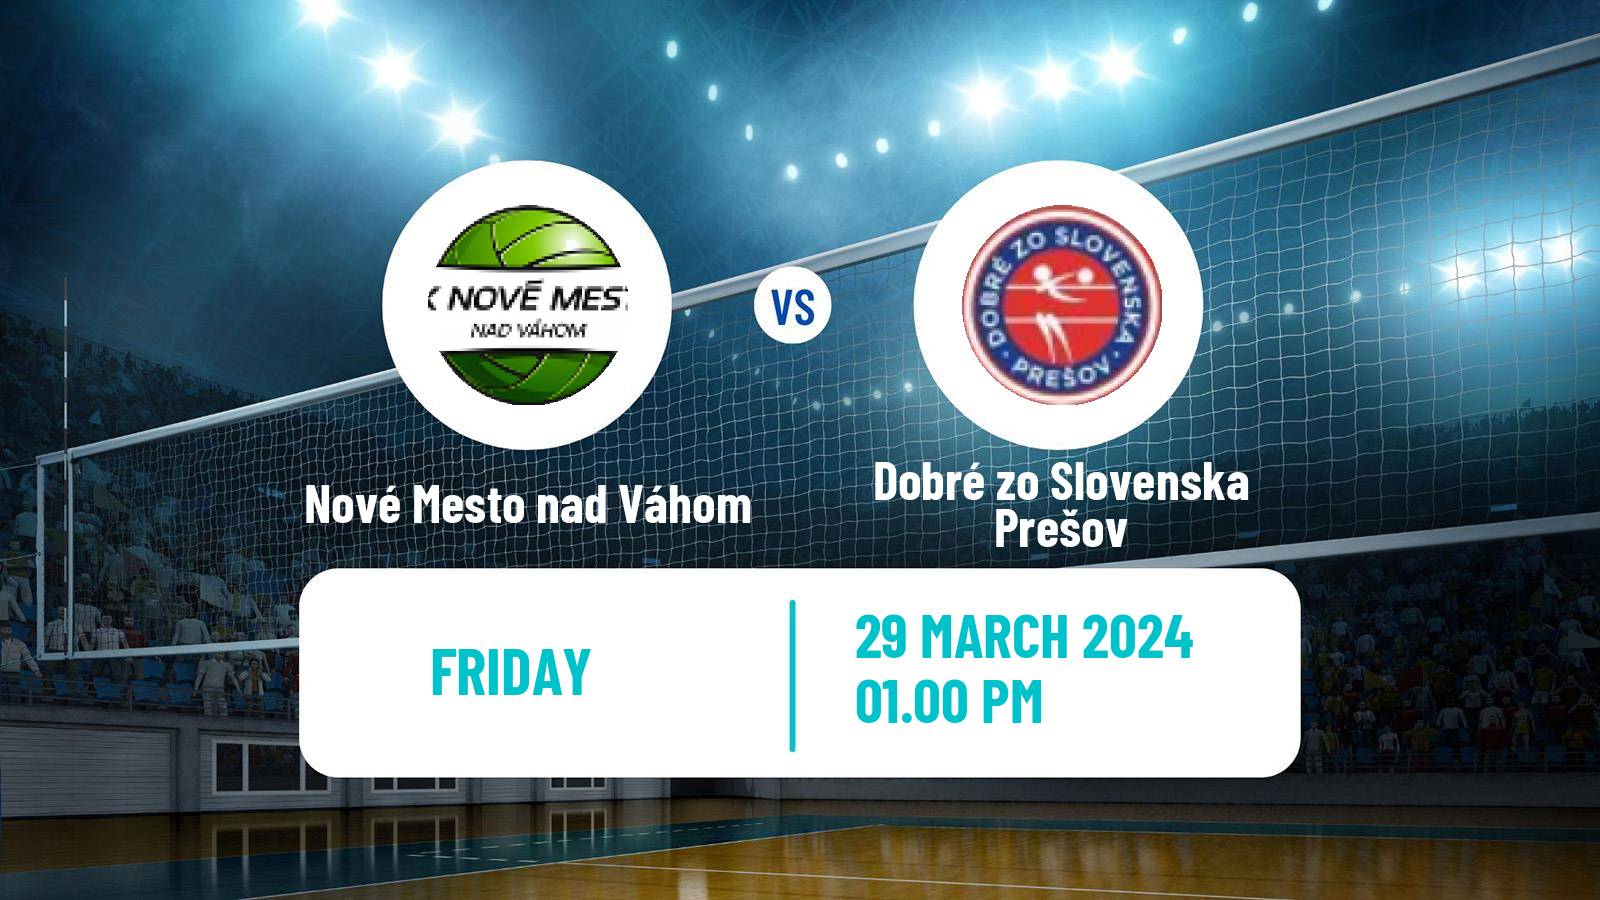 Volleyball Slovak Extraliga Volleyball Women Nové Mesto nad Váhom - Dobré zo Slovenska Prešov